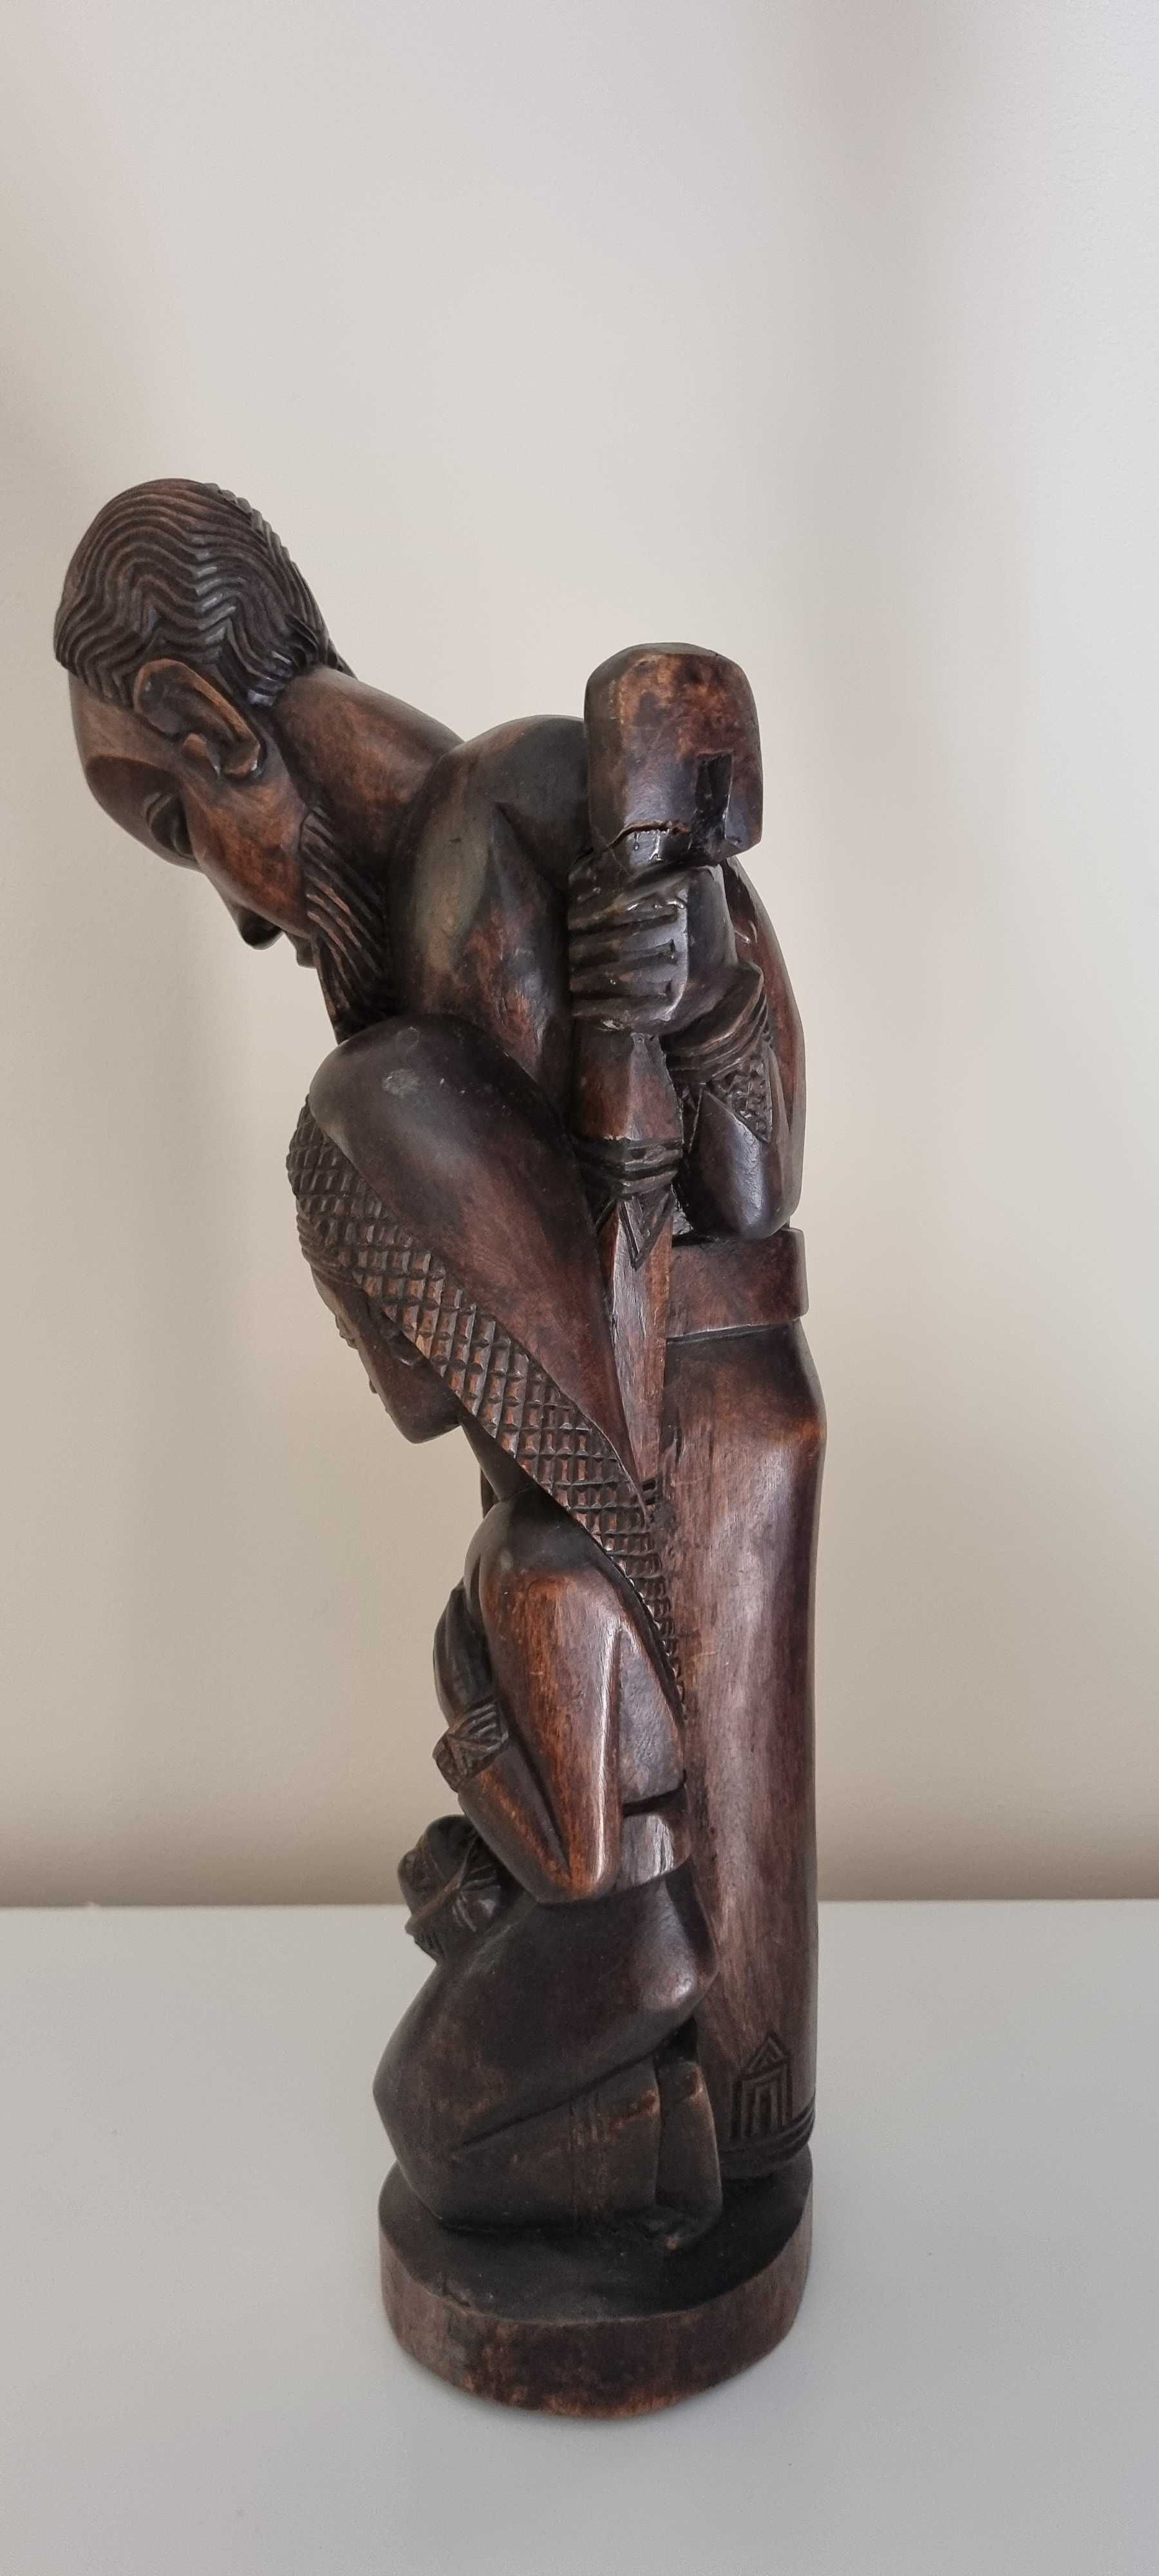 Esculturas, Estatuetas Representativas da Arte Africana